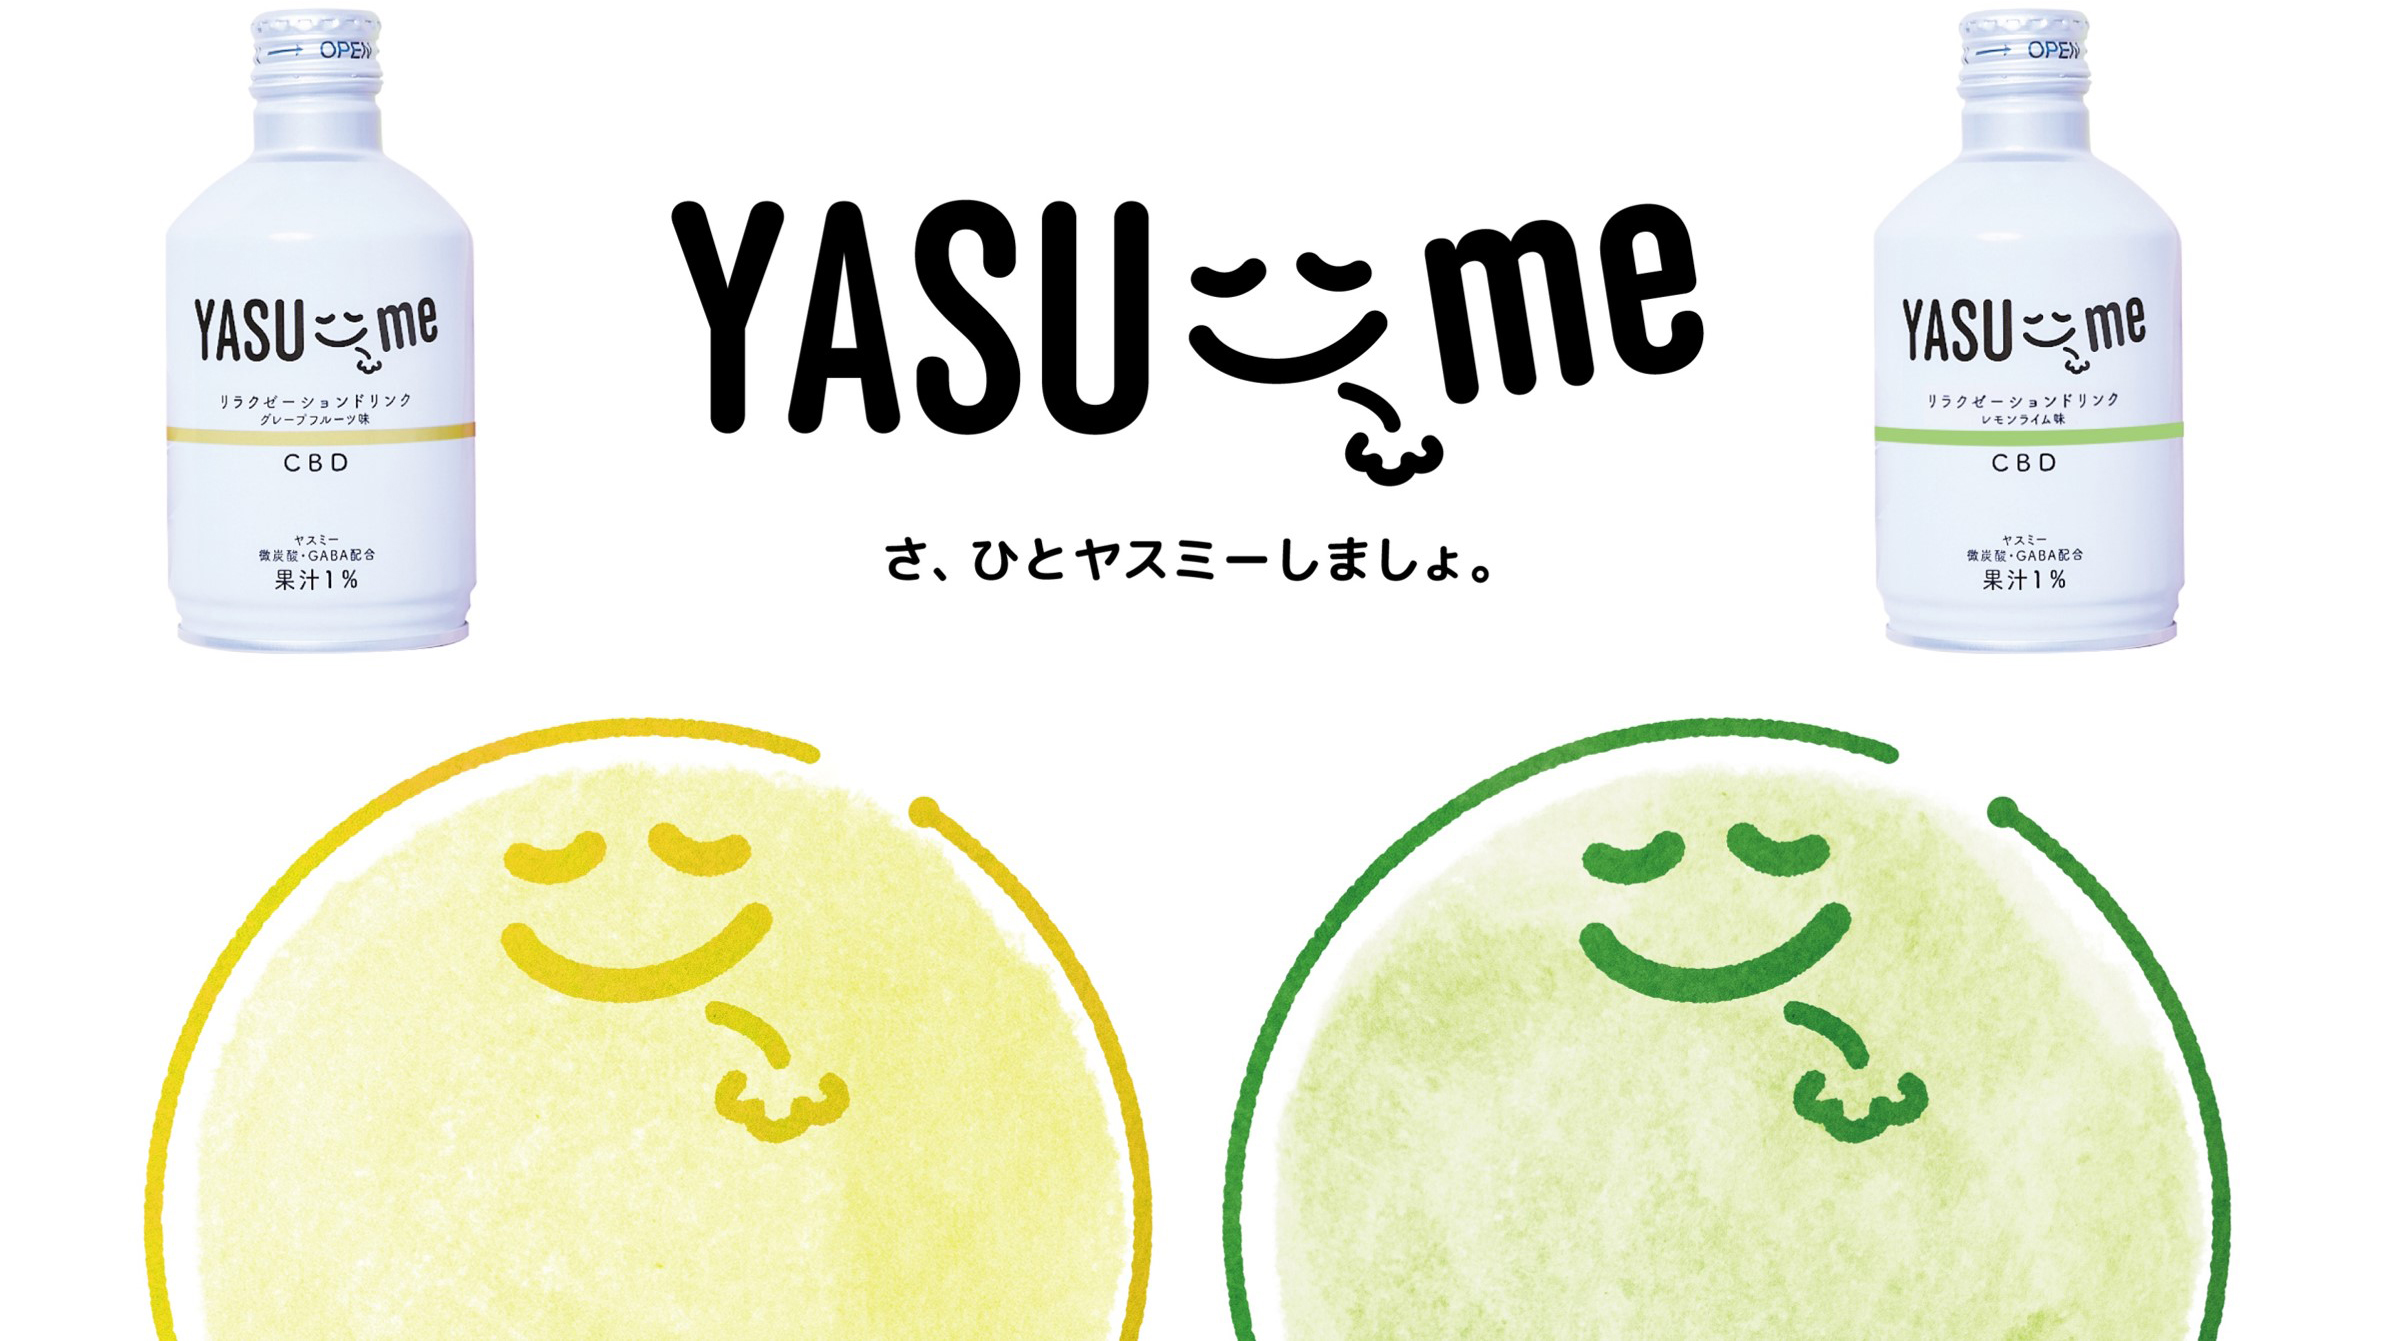 YASU-me